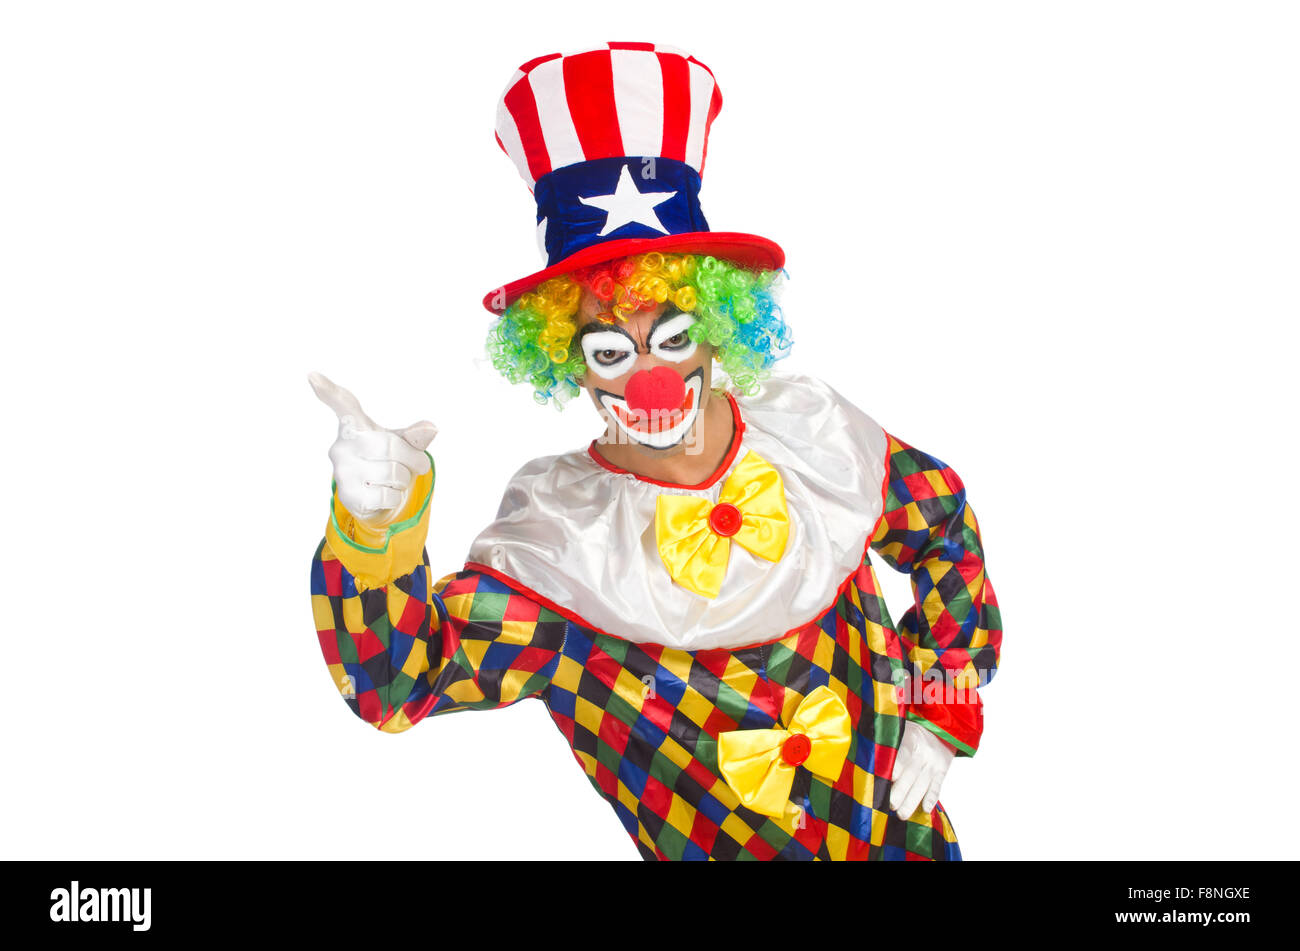 Ищет клоуна. Американский клоун. Флаг клоунов. Два клоуна грустный и веселый рисунок детей.